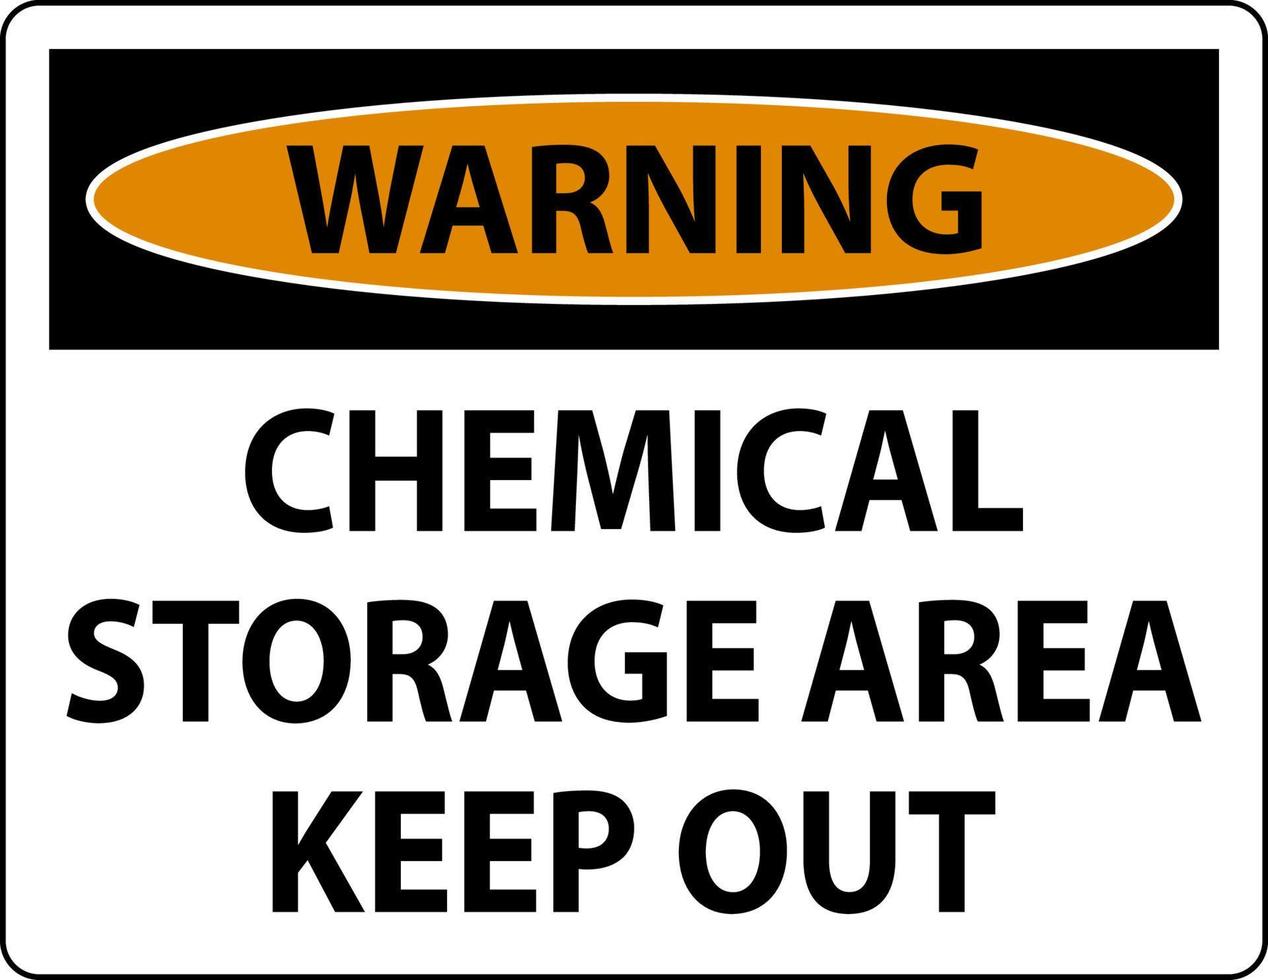 área de armazenamento de produtos químicos de advertência mantenha fora o sinal vetor